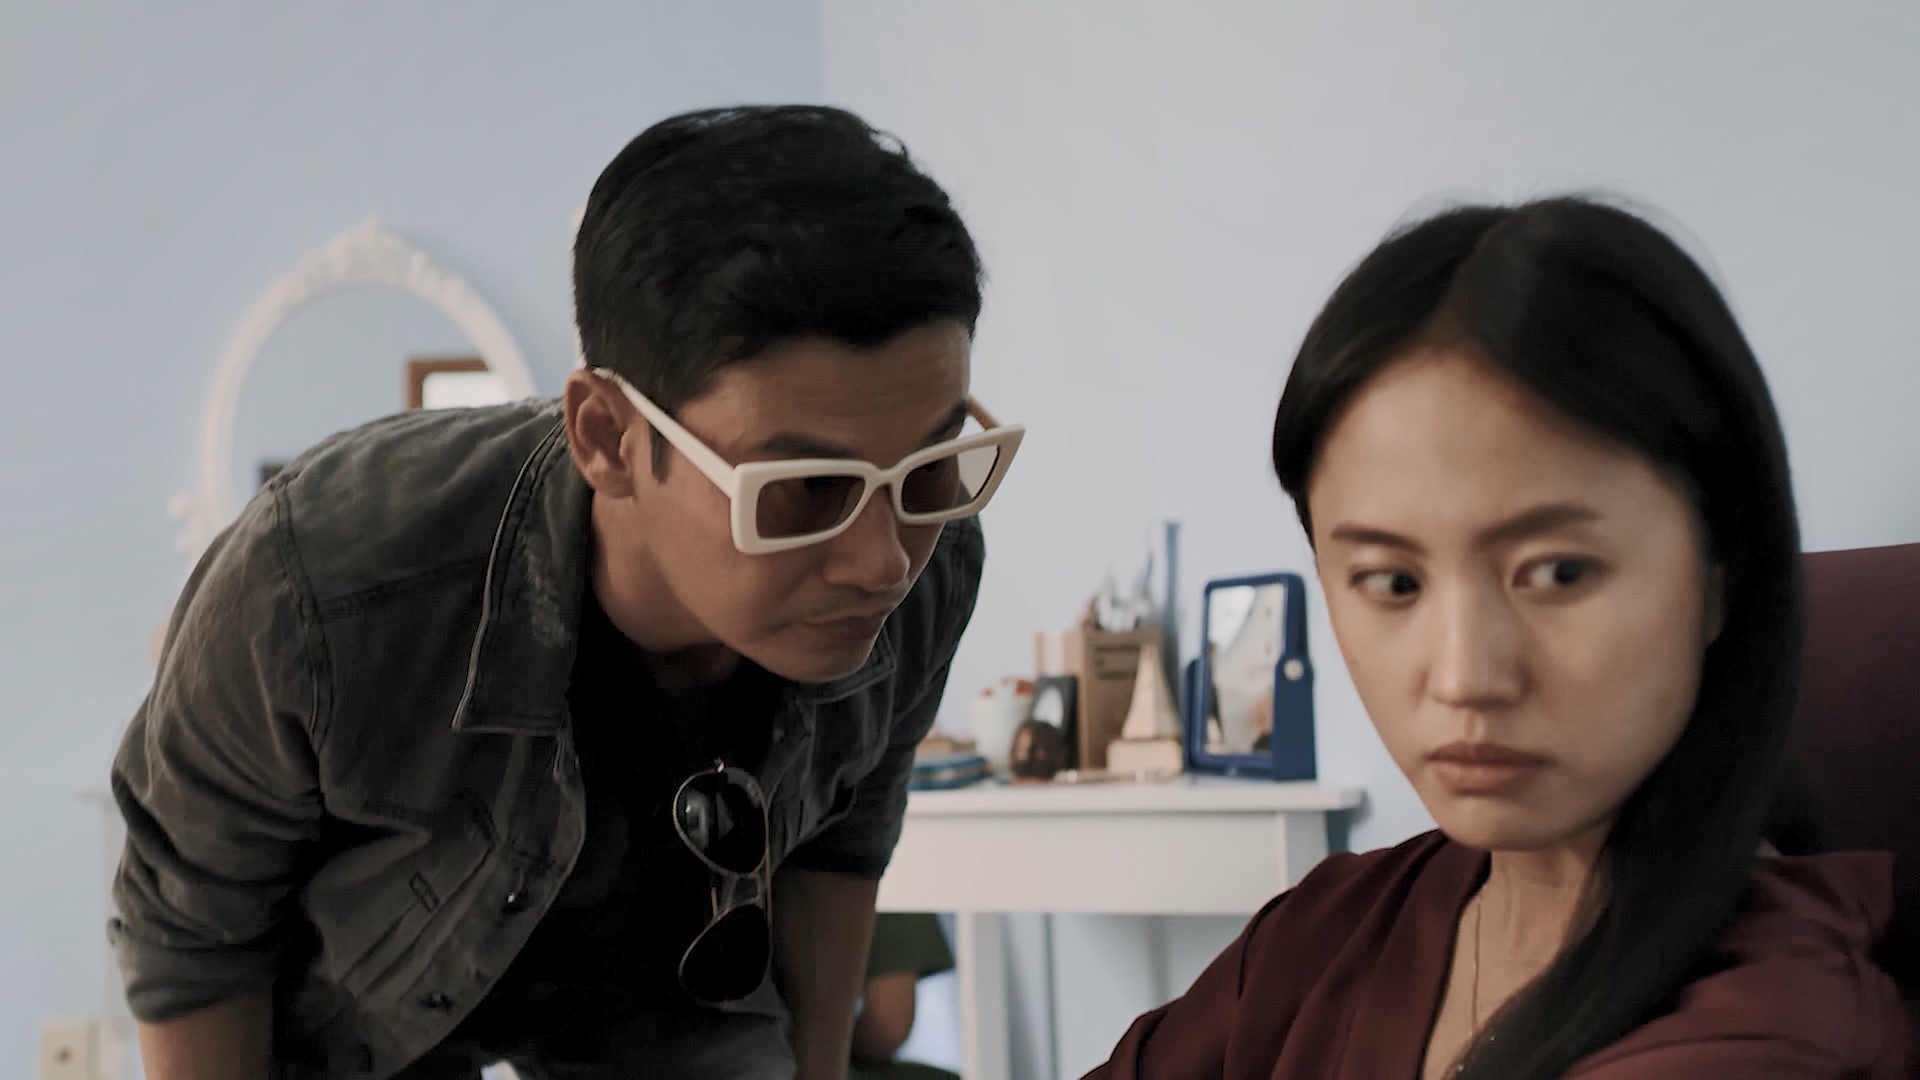 Series trinh thám lấy cảm hứng từ những vụ án có thật tại Việt Nam tung trailer kịch tính - ảnh 4